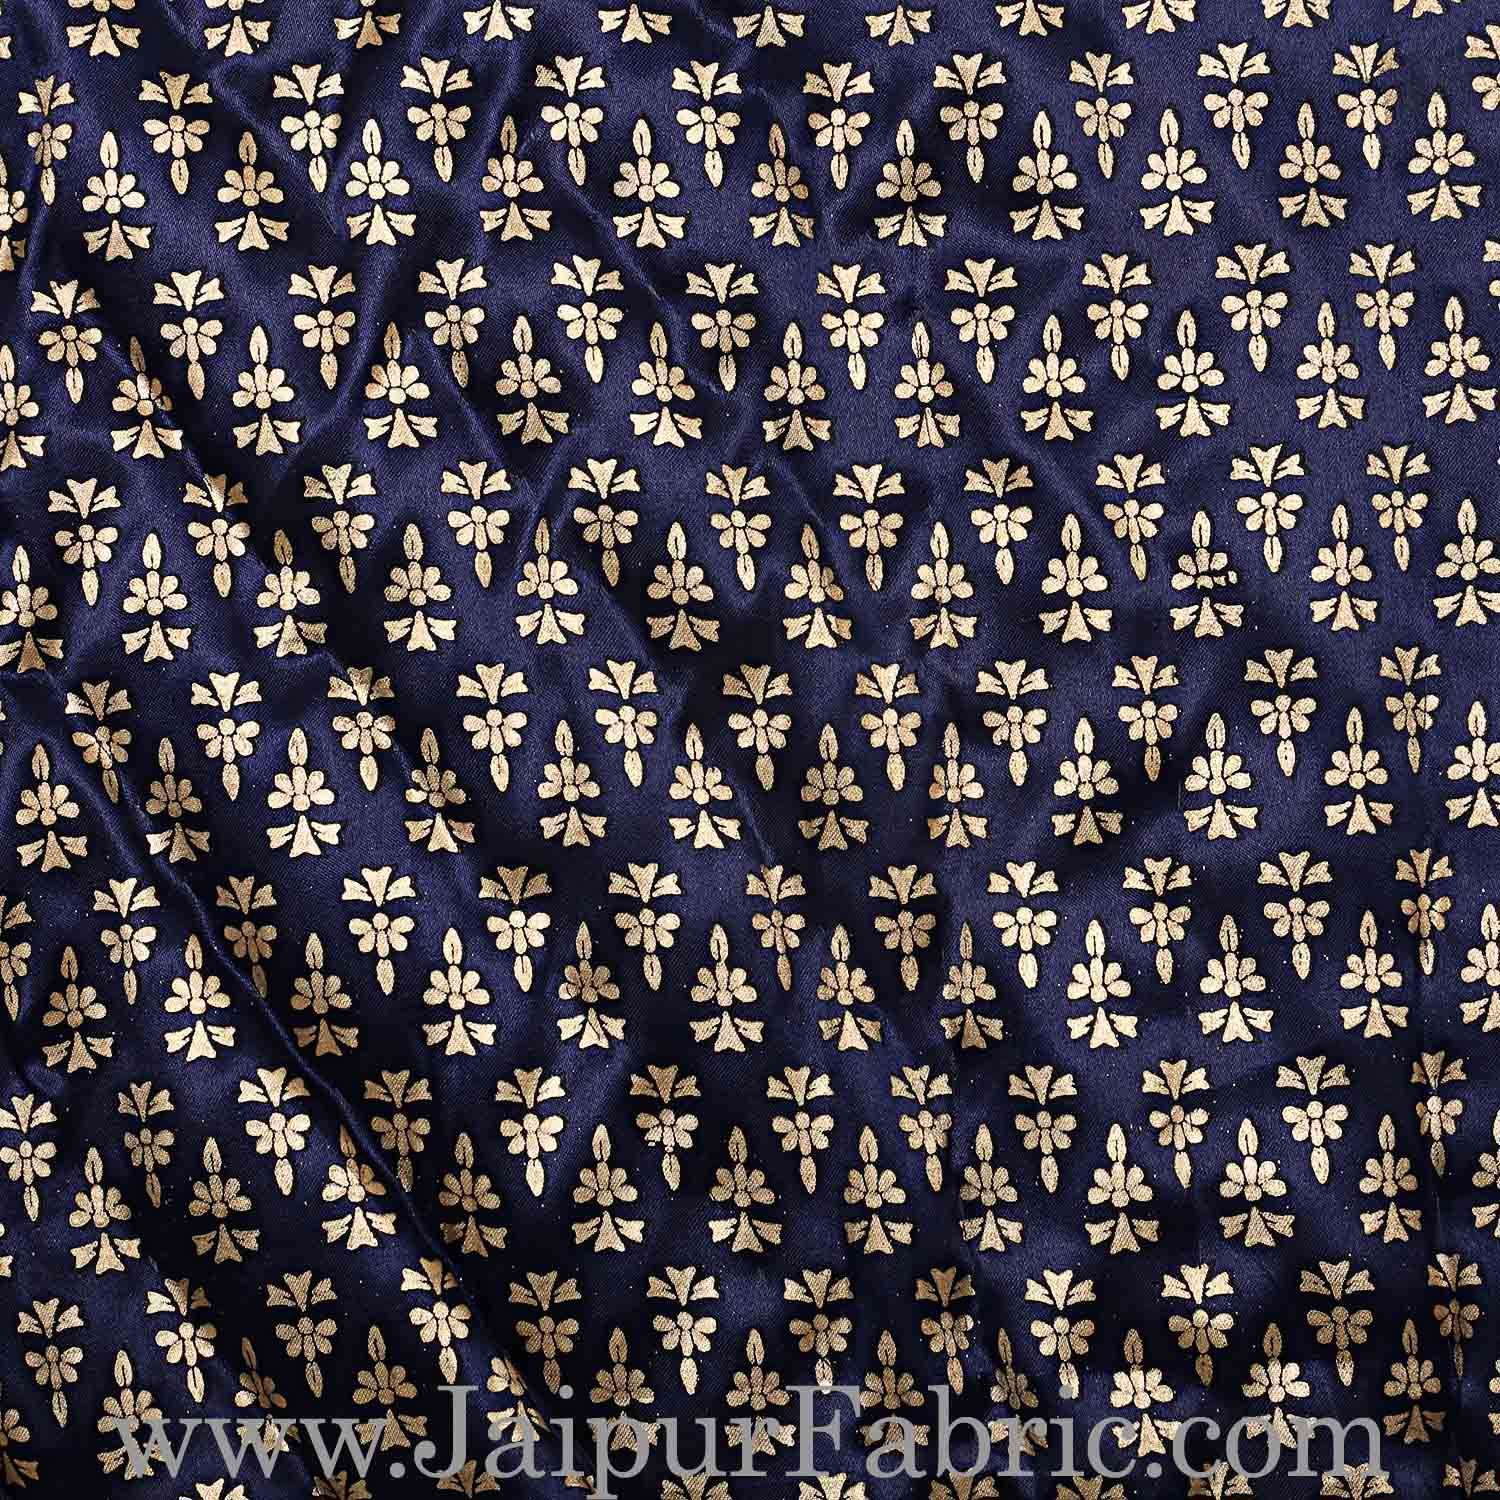 Single Bed Quilt Navy Blue Base Golden Floral Print Silk